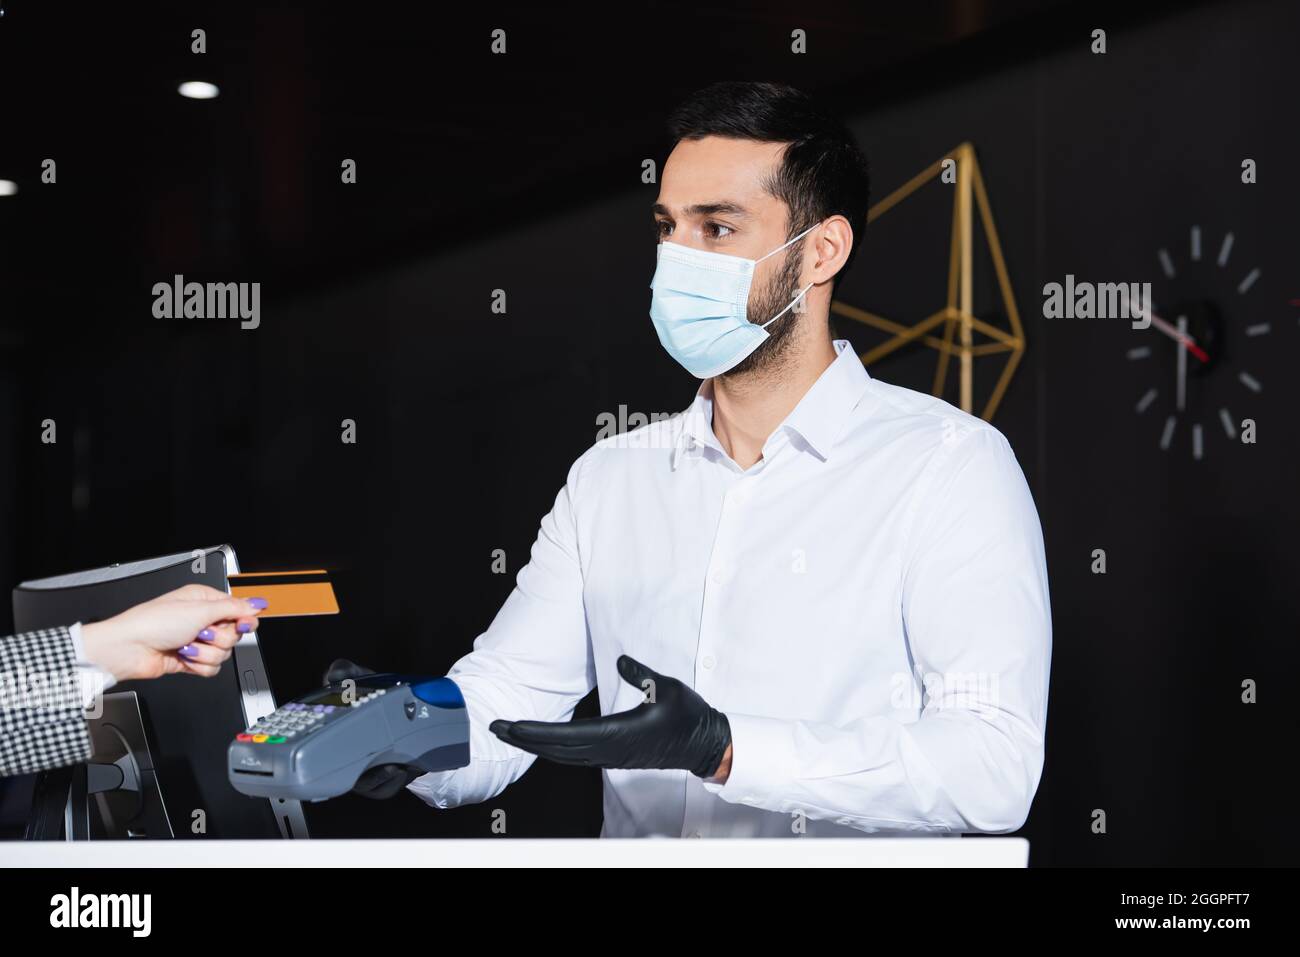 Rezeptionist mit medizinischer Maske und Latexhandschuhen, die das Zahlungsterminal mit Kreditkarte in der Nähe des Touristen halten Stockfoto